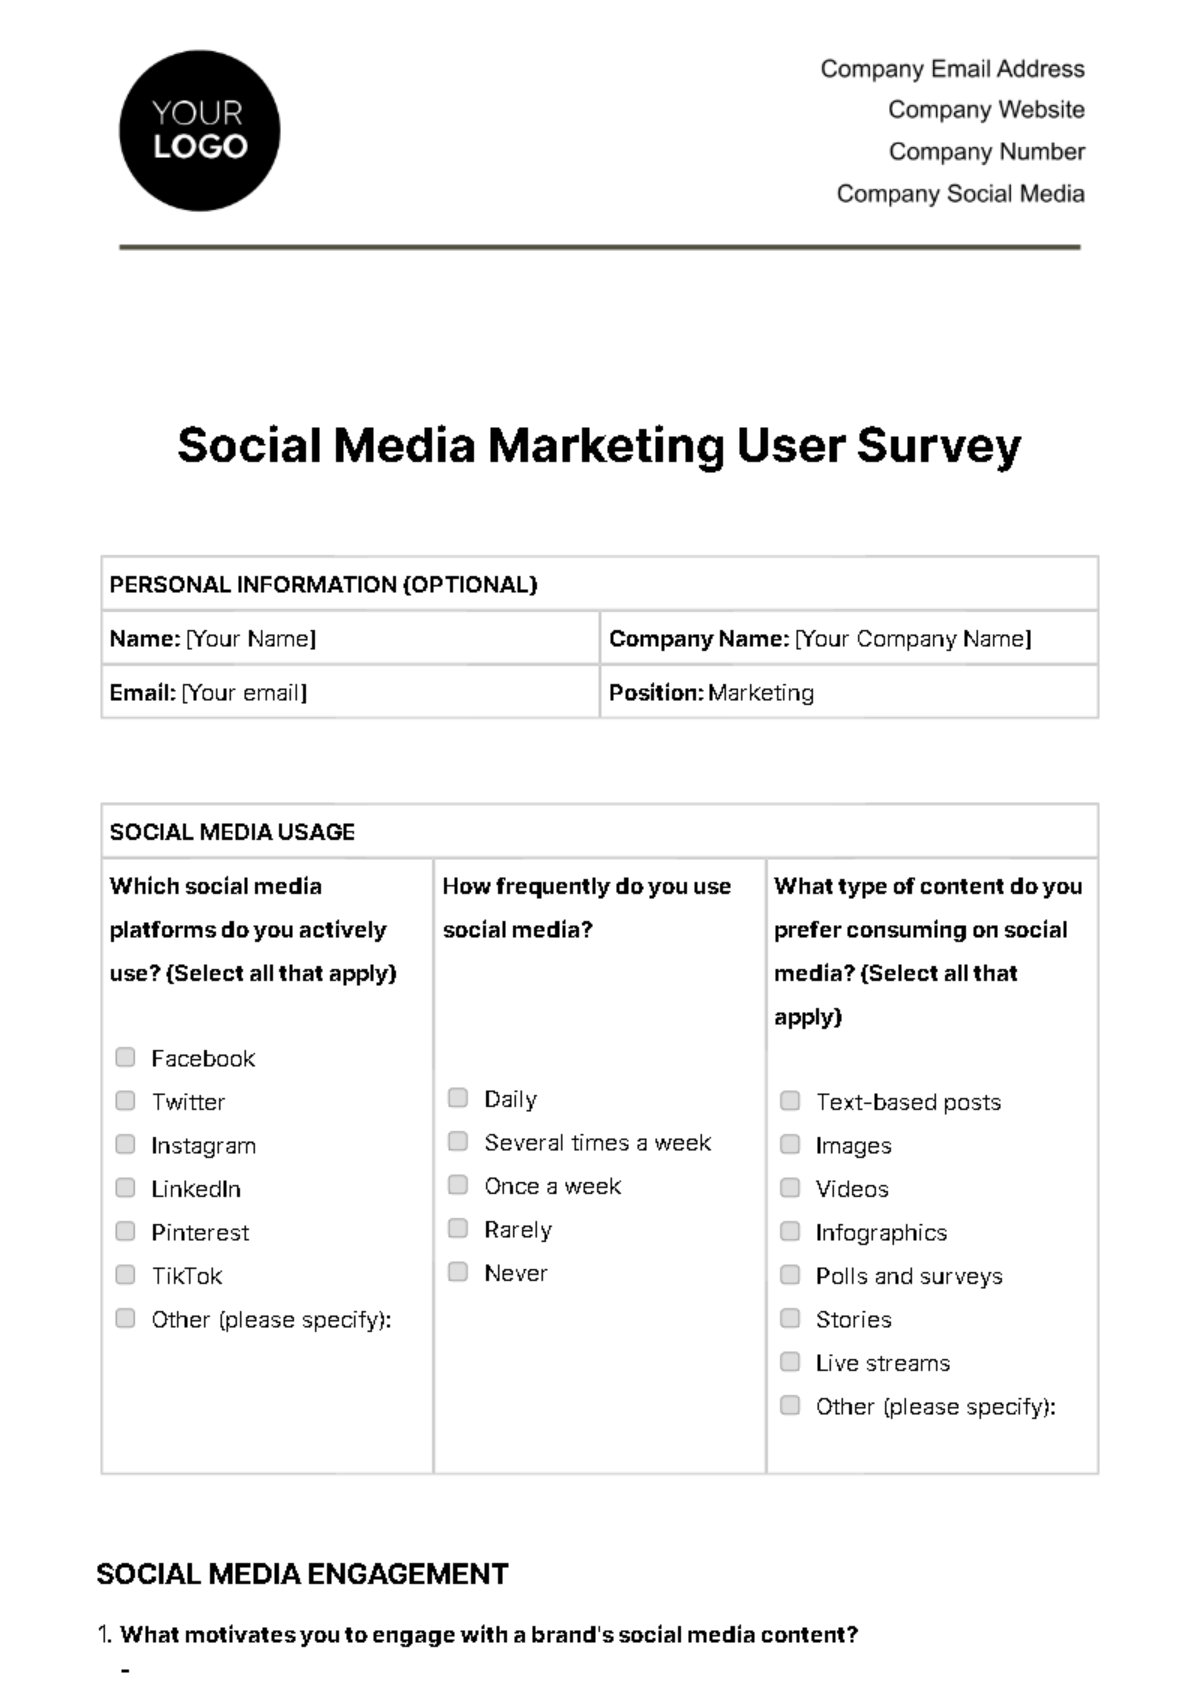 Social Media Marketing User Survey Template